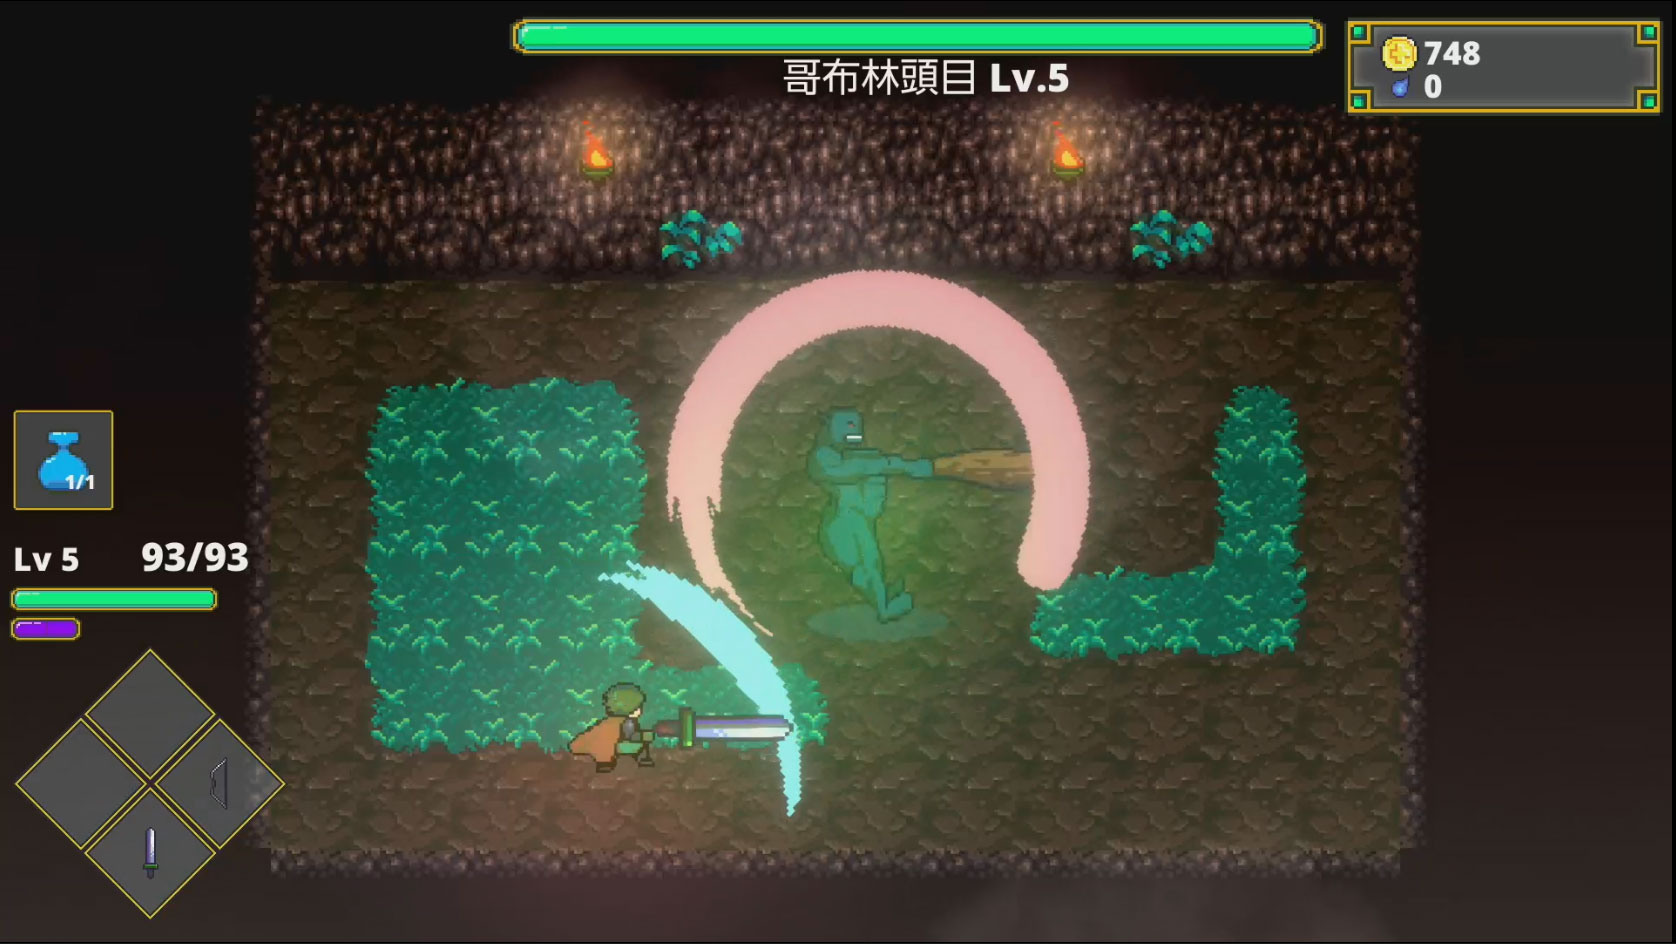 迷宫探险动作游戏《迷宫传说》Switch 中文数位下载版 10 月 20 日上市